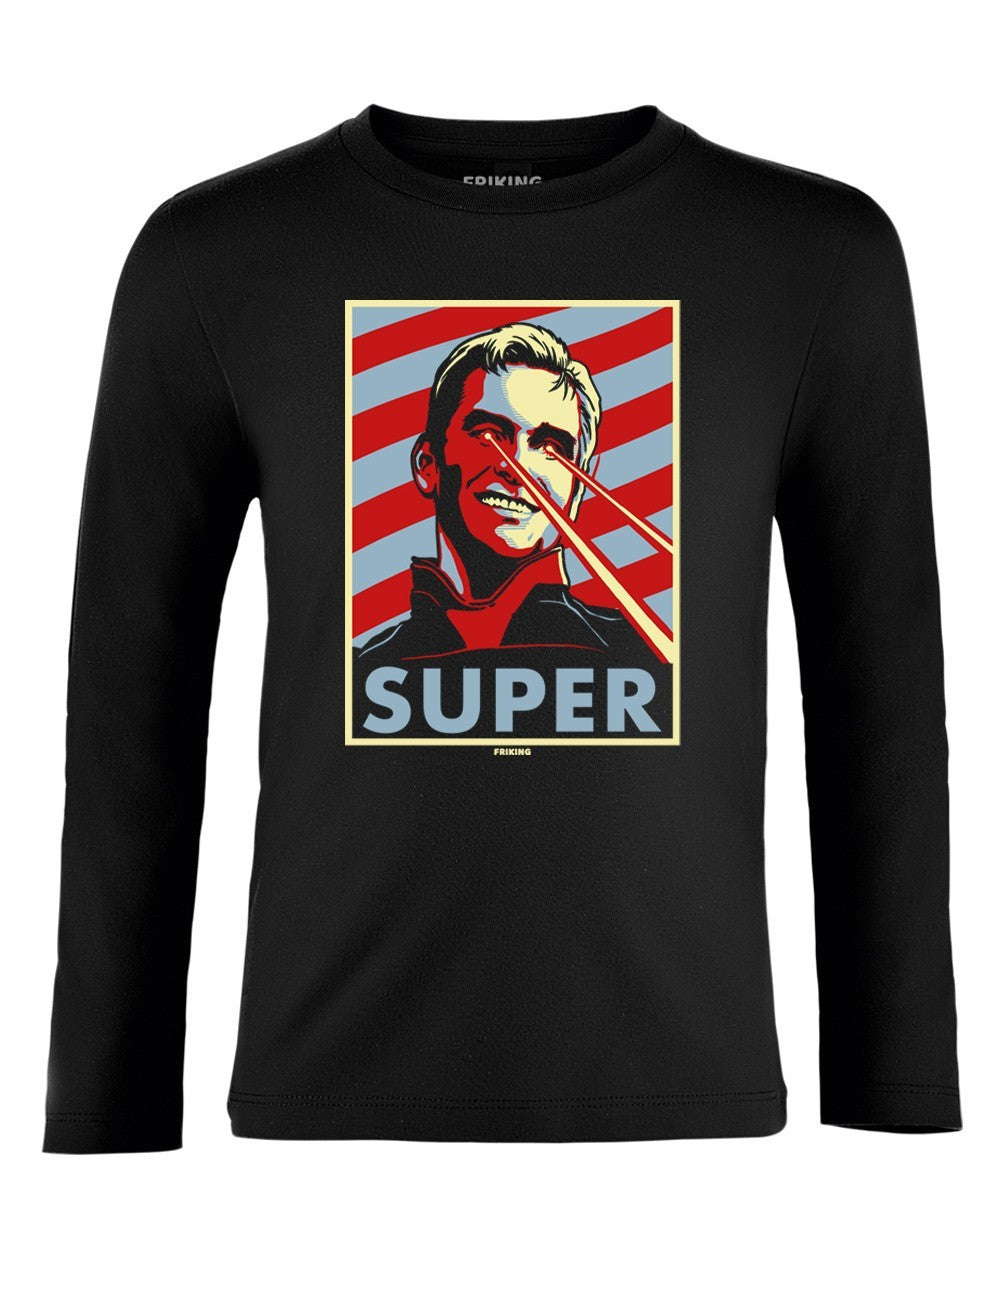 Superman - Camiseta de manga corta para hombre, color rojo sobre negro